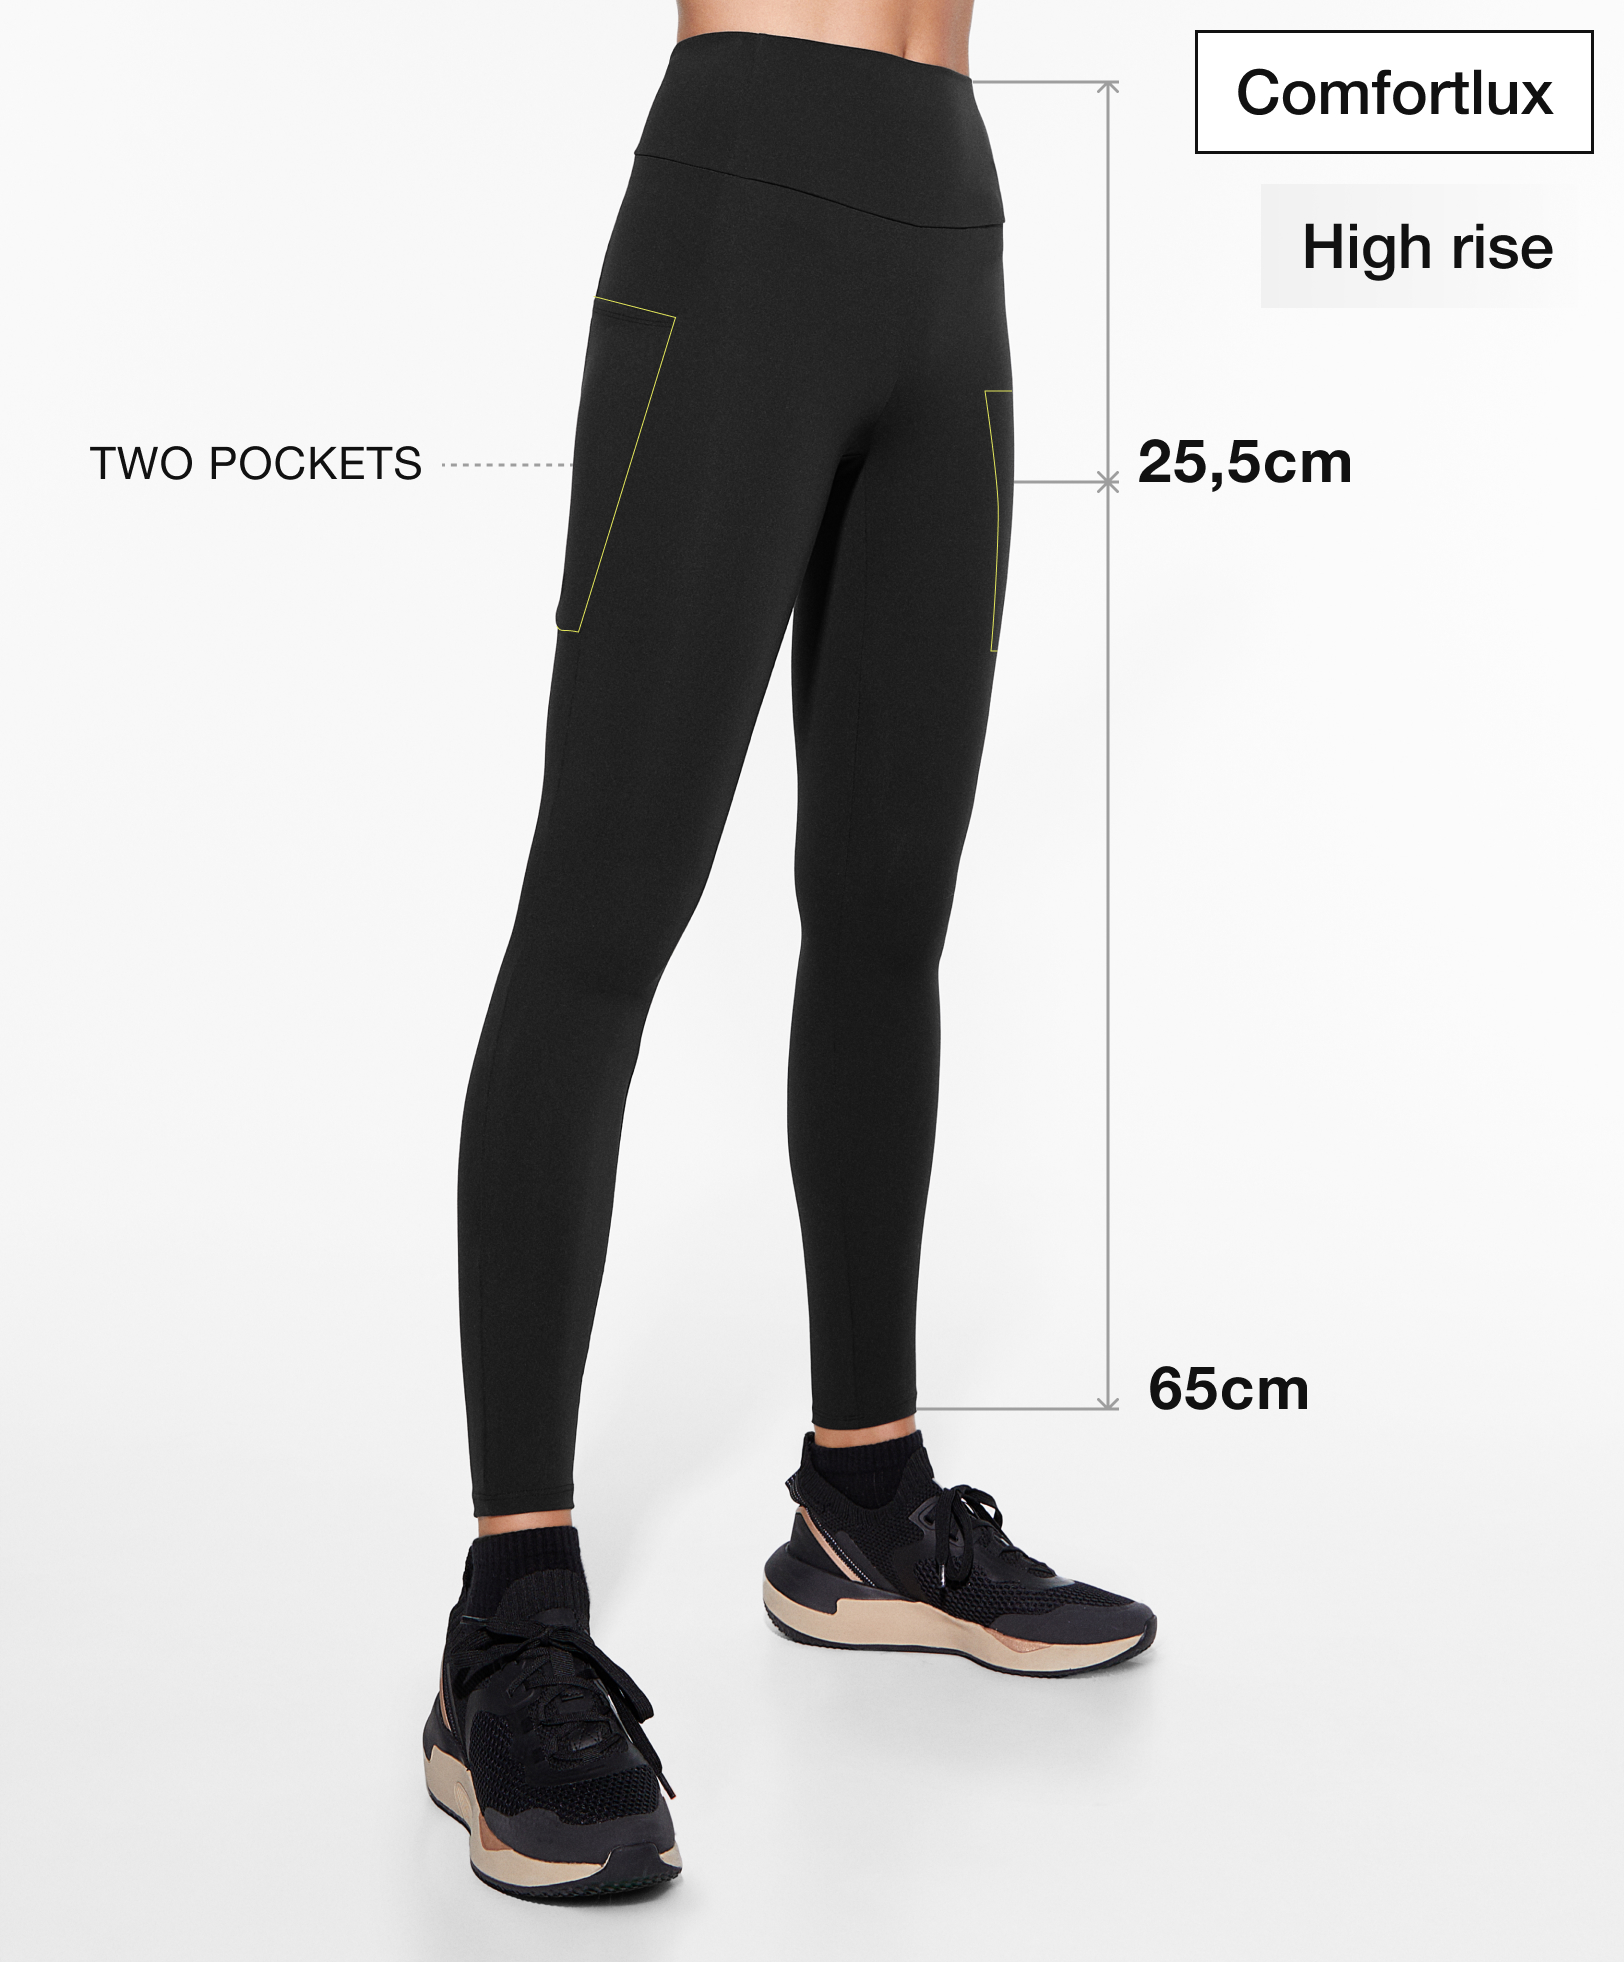 Leggings comfortlux pockets até ao tornozelo (65 cm)